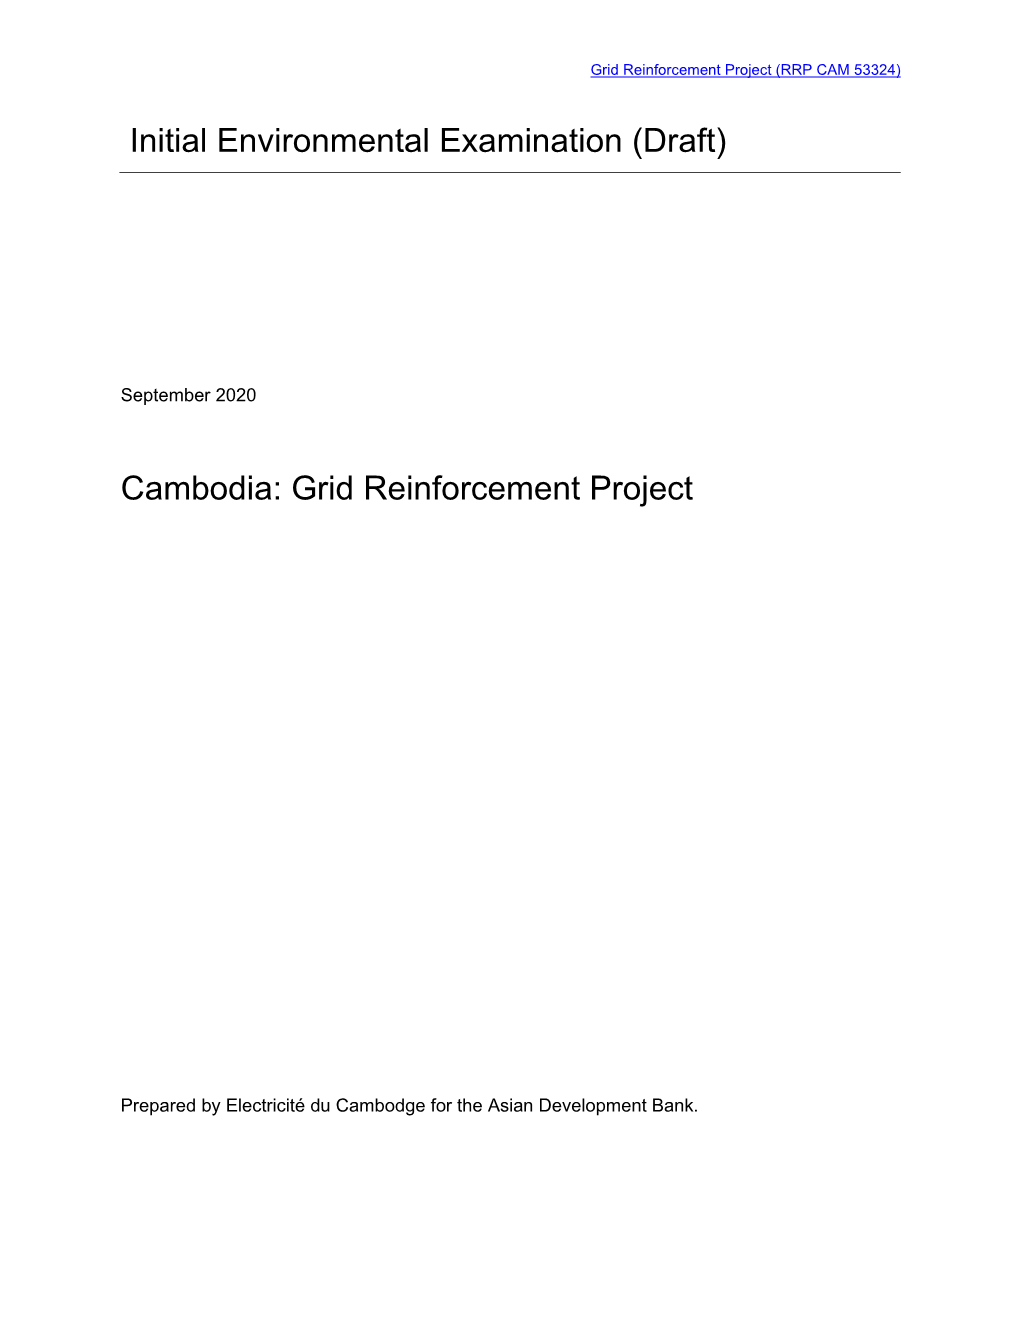 53324-001: Grid Reinforcement Project